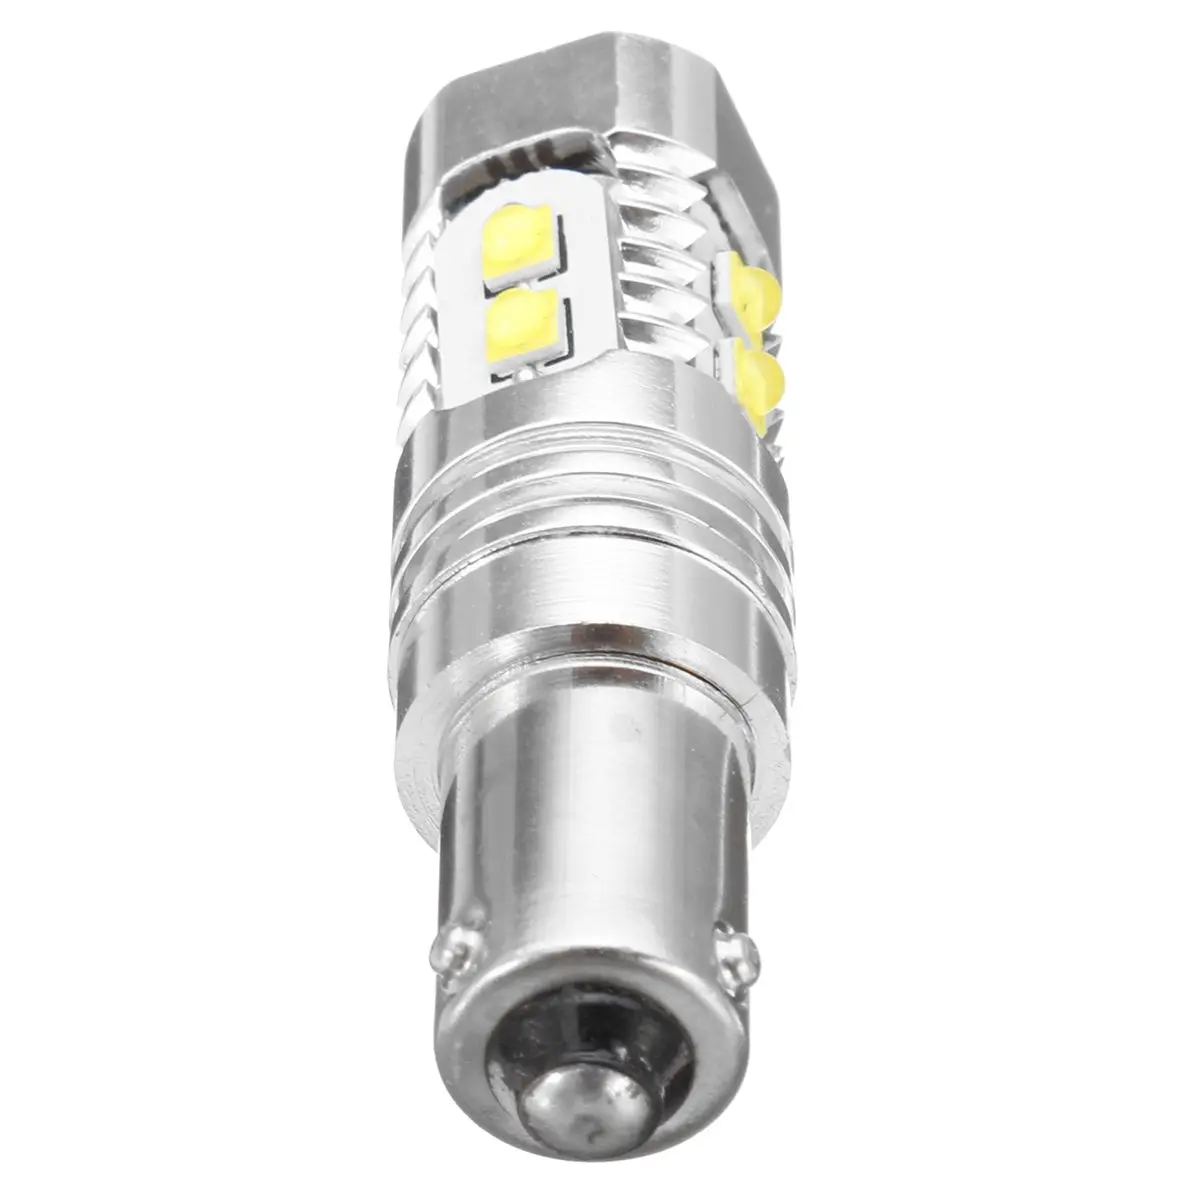 1 шт. Bay9s поворотные сигнальные лампы H21W 64136 Высокая мощность 50 Вт Светодиодный прожектор Белый Автомобильный противотуманный светильник